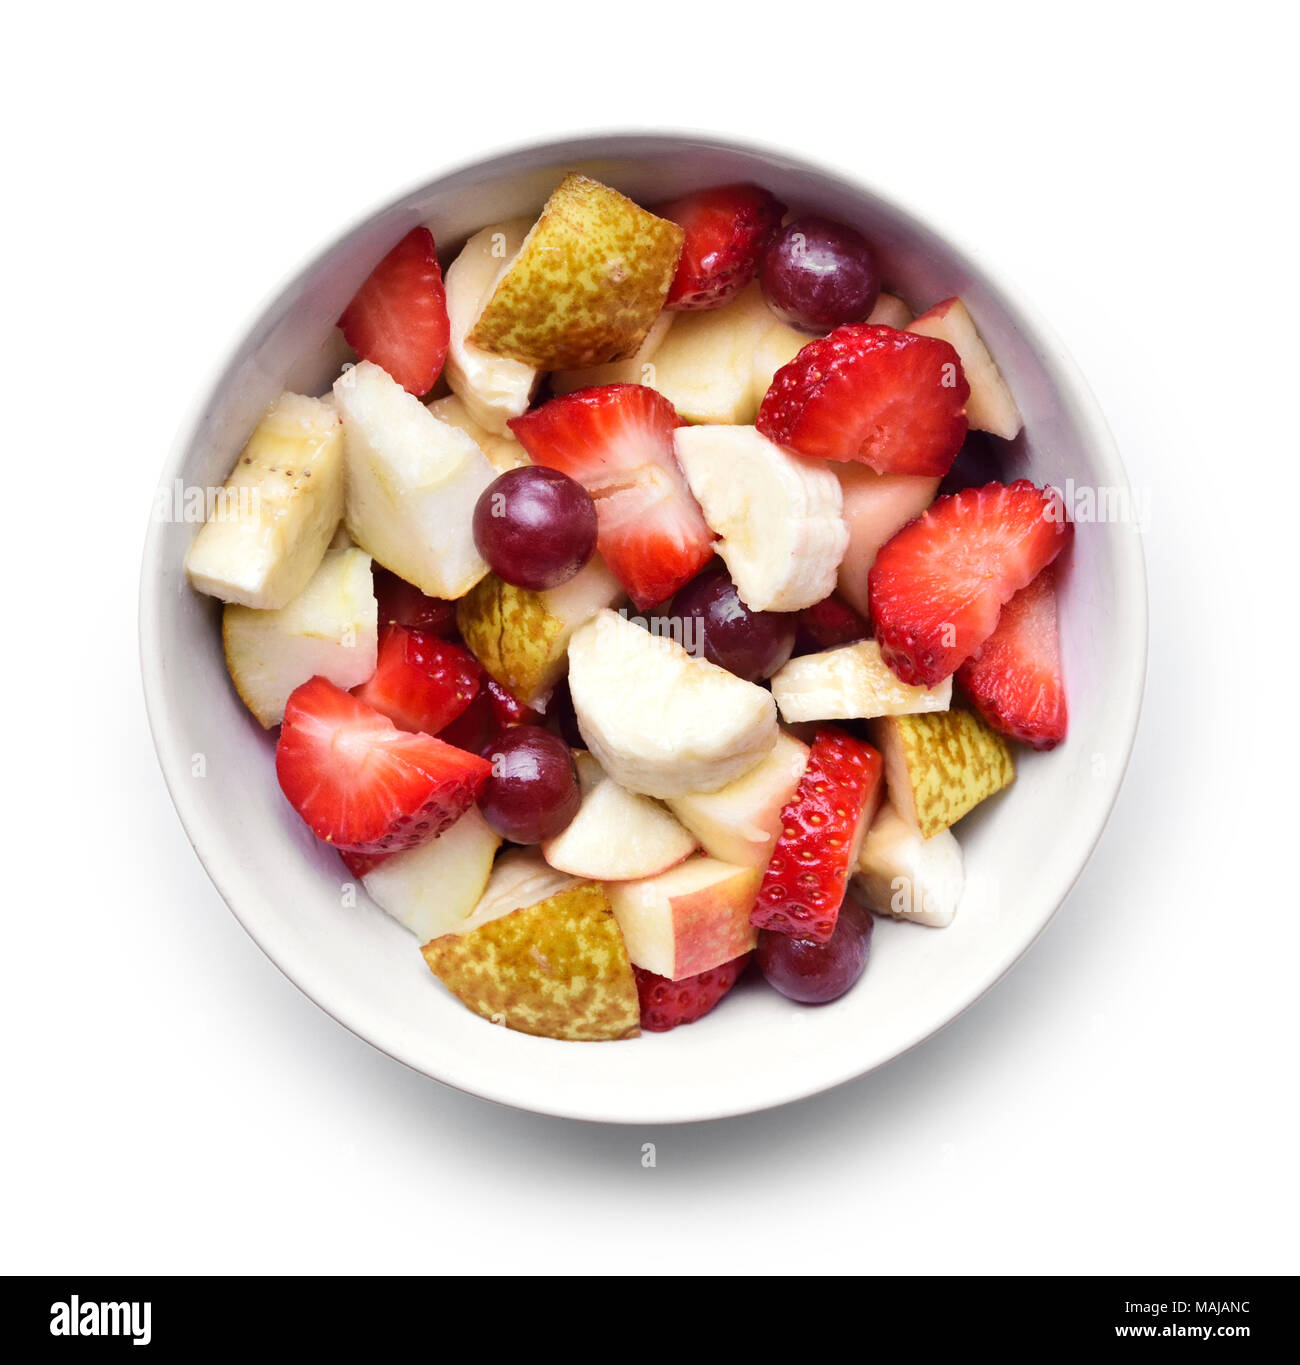 Salade de fruit dans un bol blanc, isolé sur fond blanc. Fruits frais, fruits en tranches, high angle view. Banque D'Images